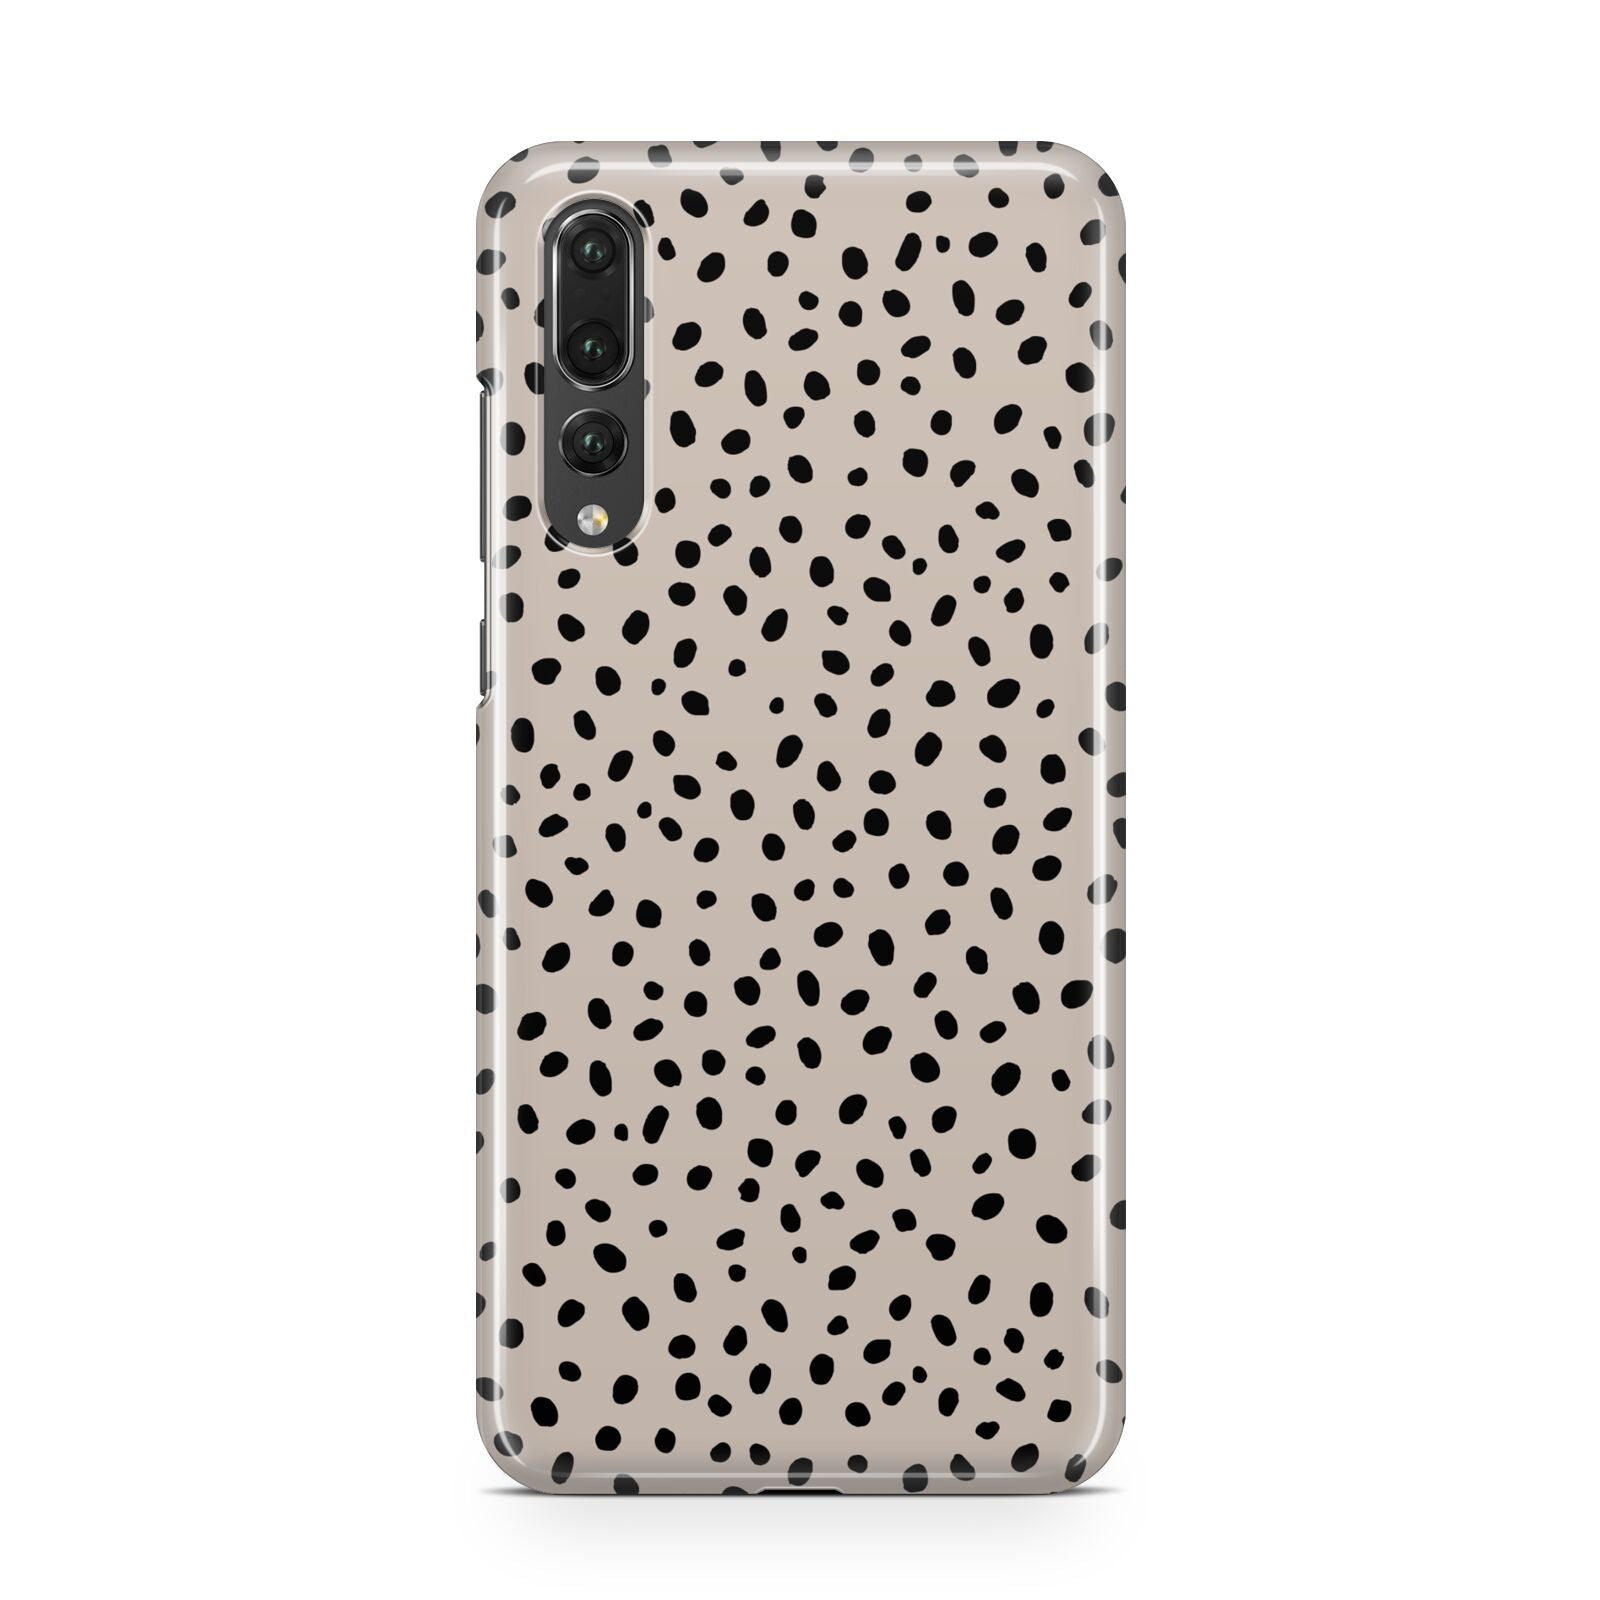 Almond Polka Dot Huawei P20 Pro Phone Case